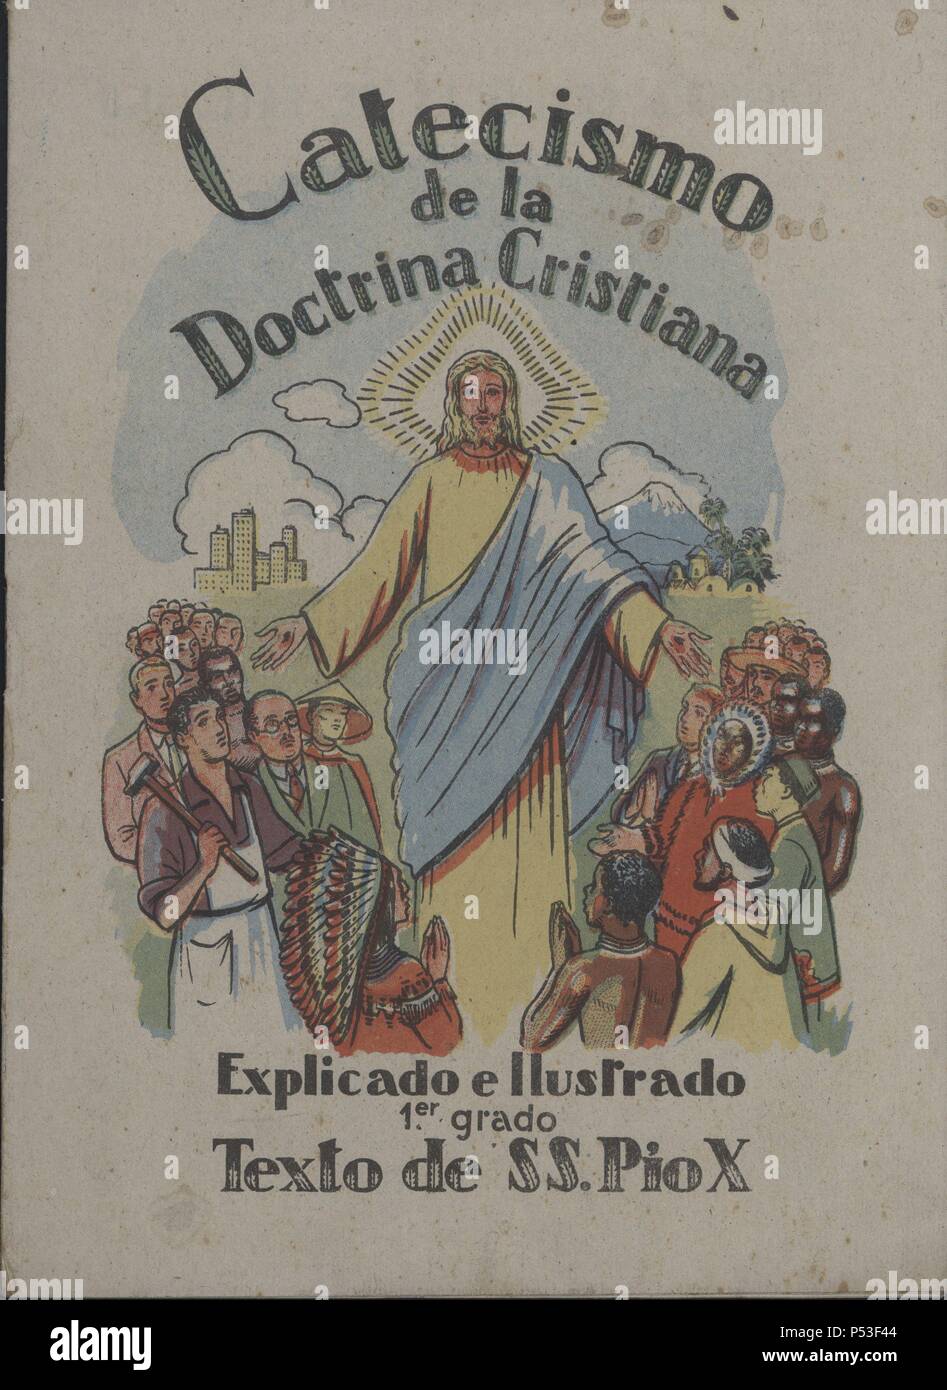 Portada del Catecismo de la Doctrina Cristiana, texto de Su Santidad Pio X.  Publicado en Barcelona, 1940 Stock Photo - Alamy